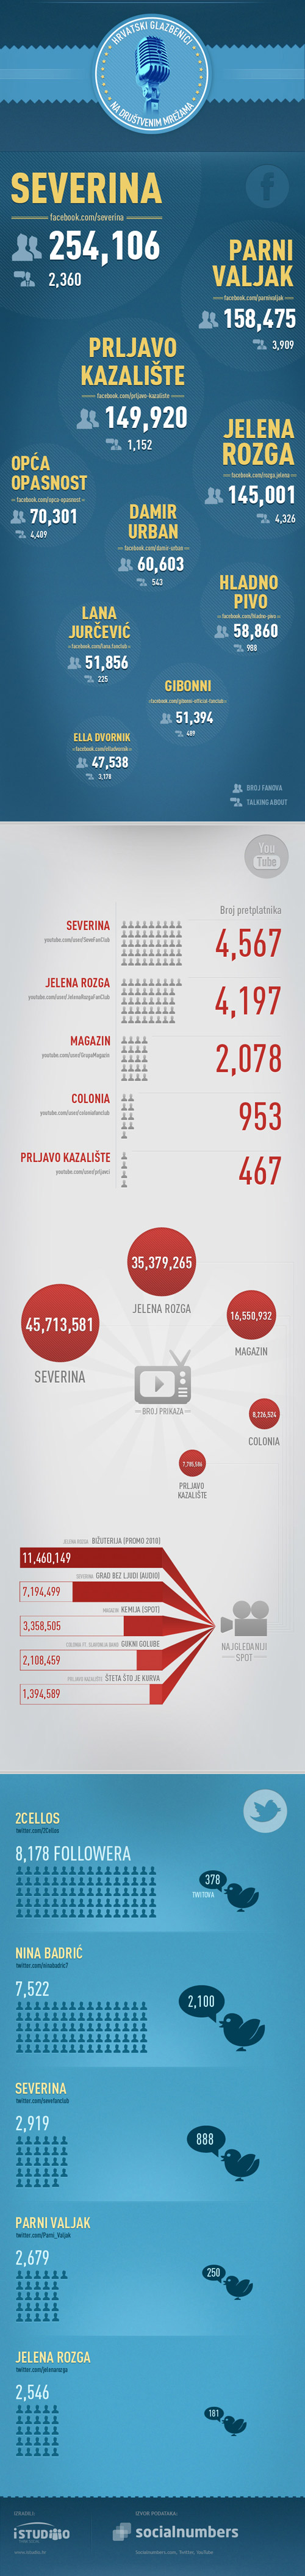 Infografika - Hrvatski glazbenici na društvenim mrežama